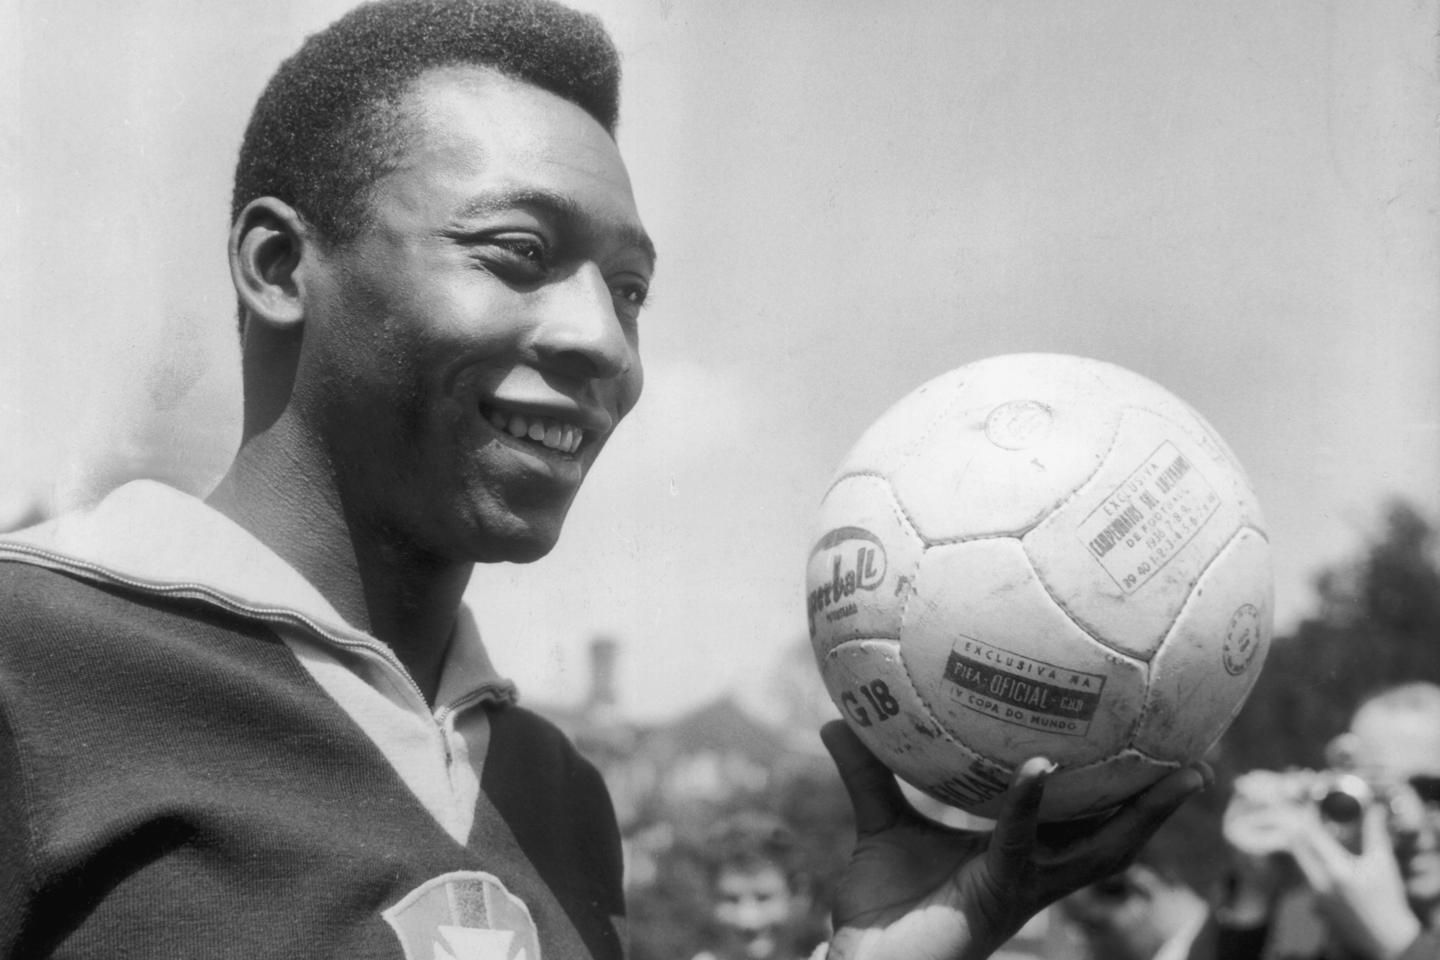 Quer ver Pelé jogando? Assista a 3 jogos históricos do Rei na íntegra